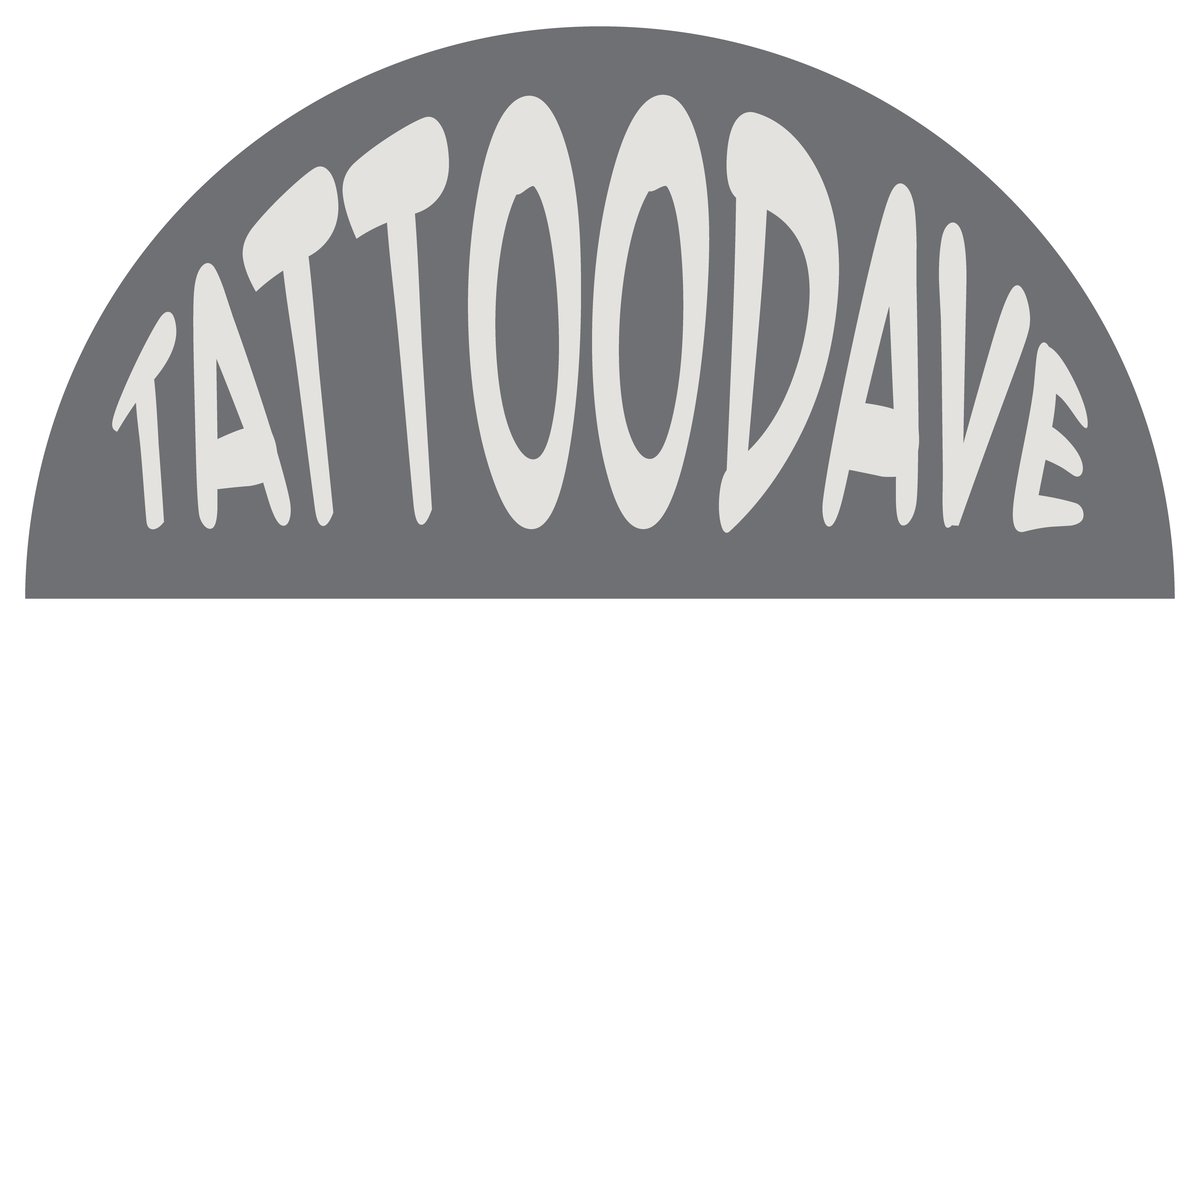 tattoodave